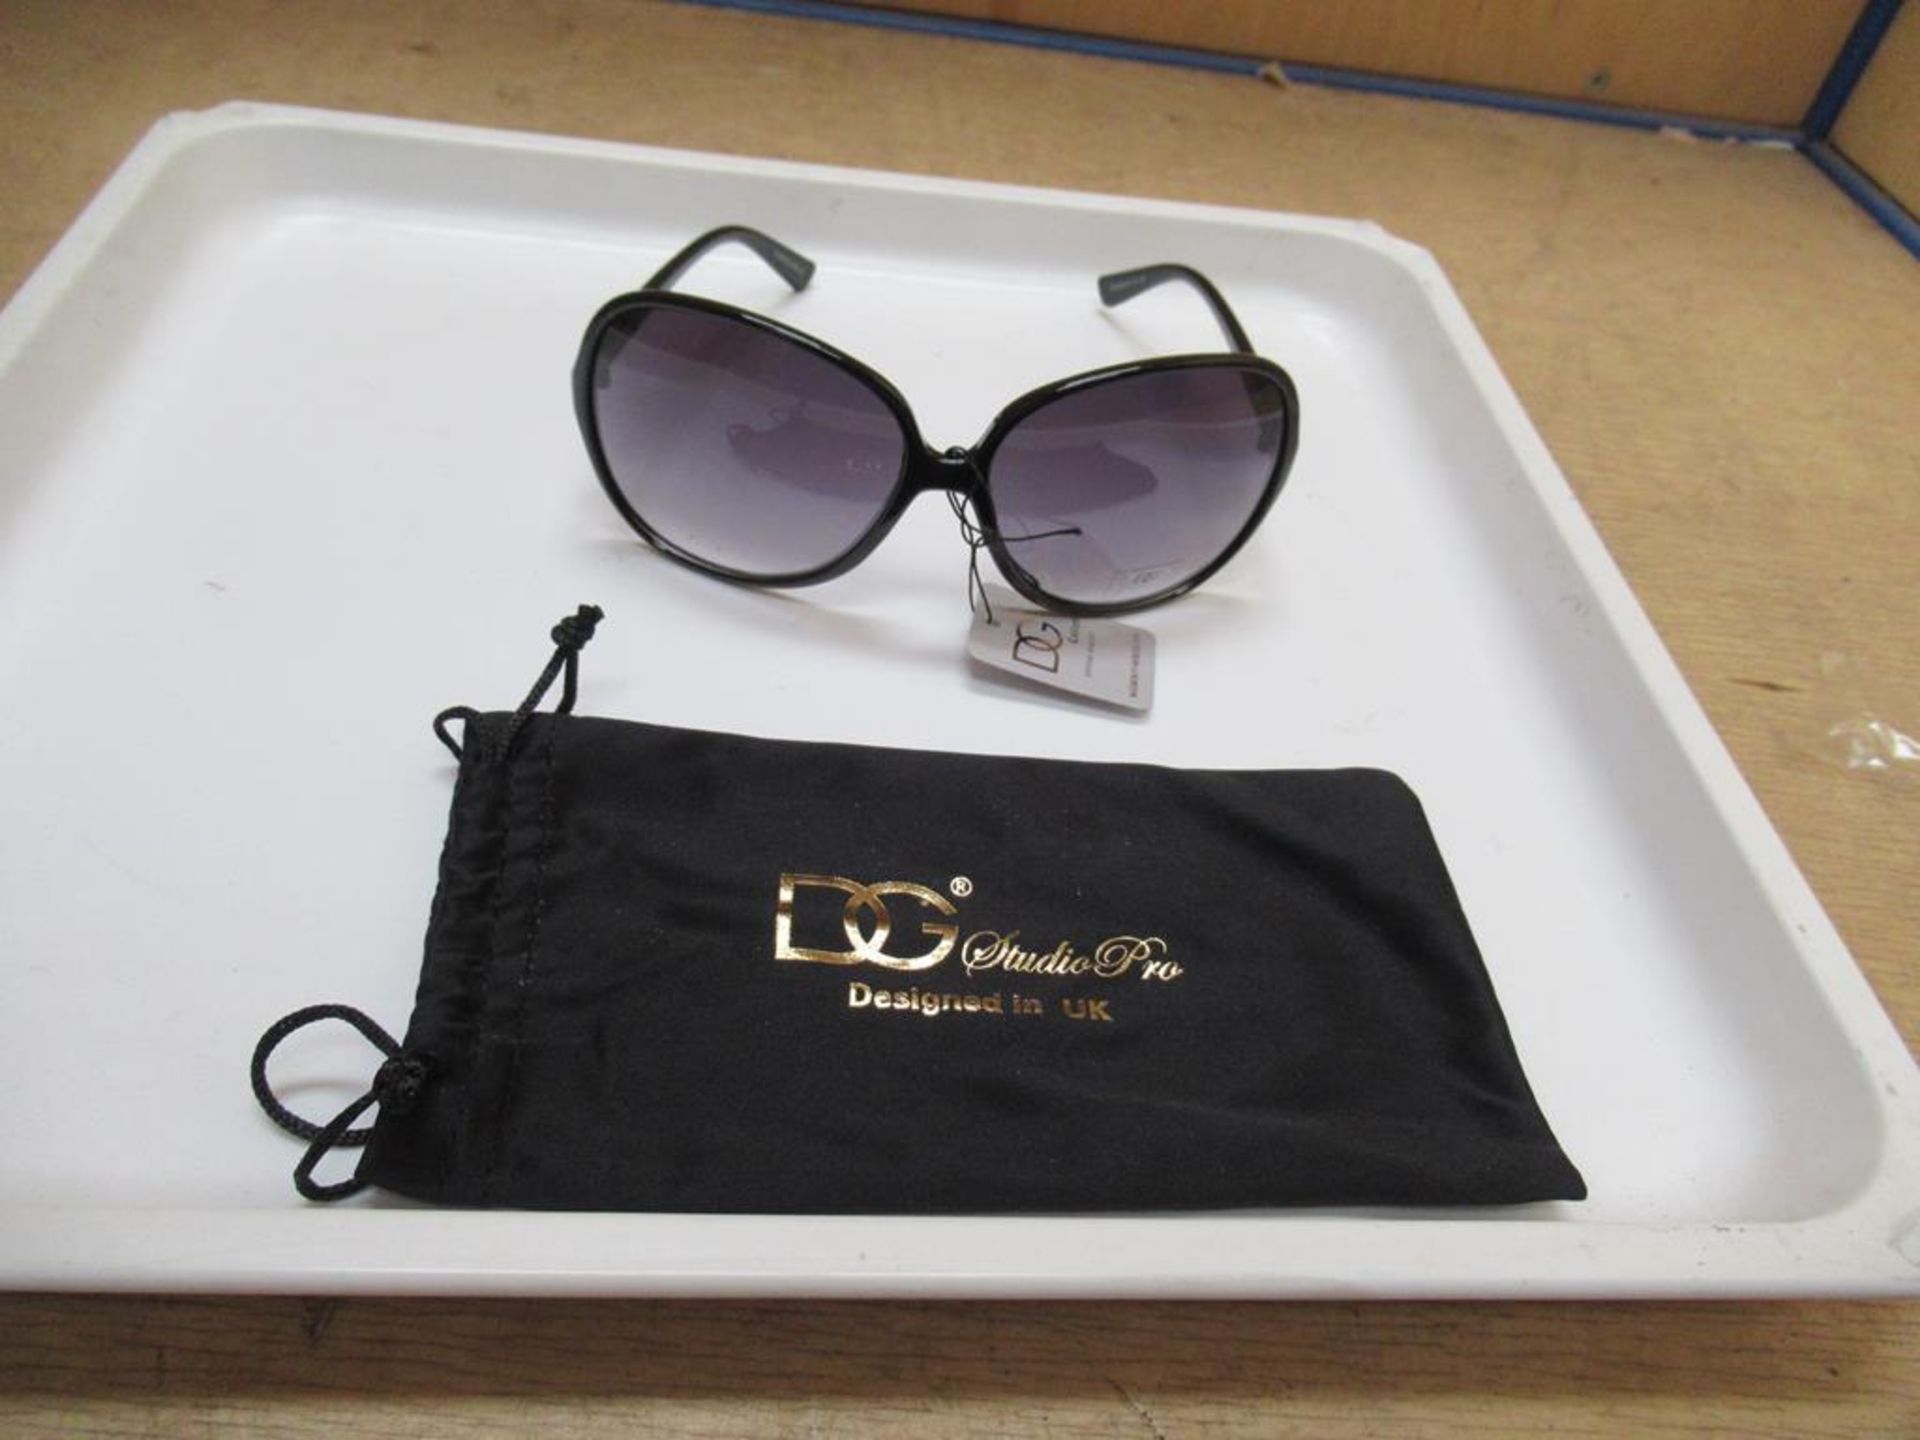 Approx 300 x DG Studio Pro BH2019 Designer Sunglasses - Image 2 of 3